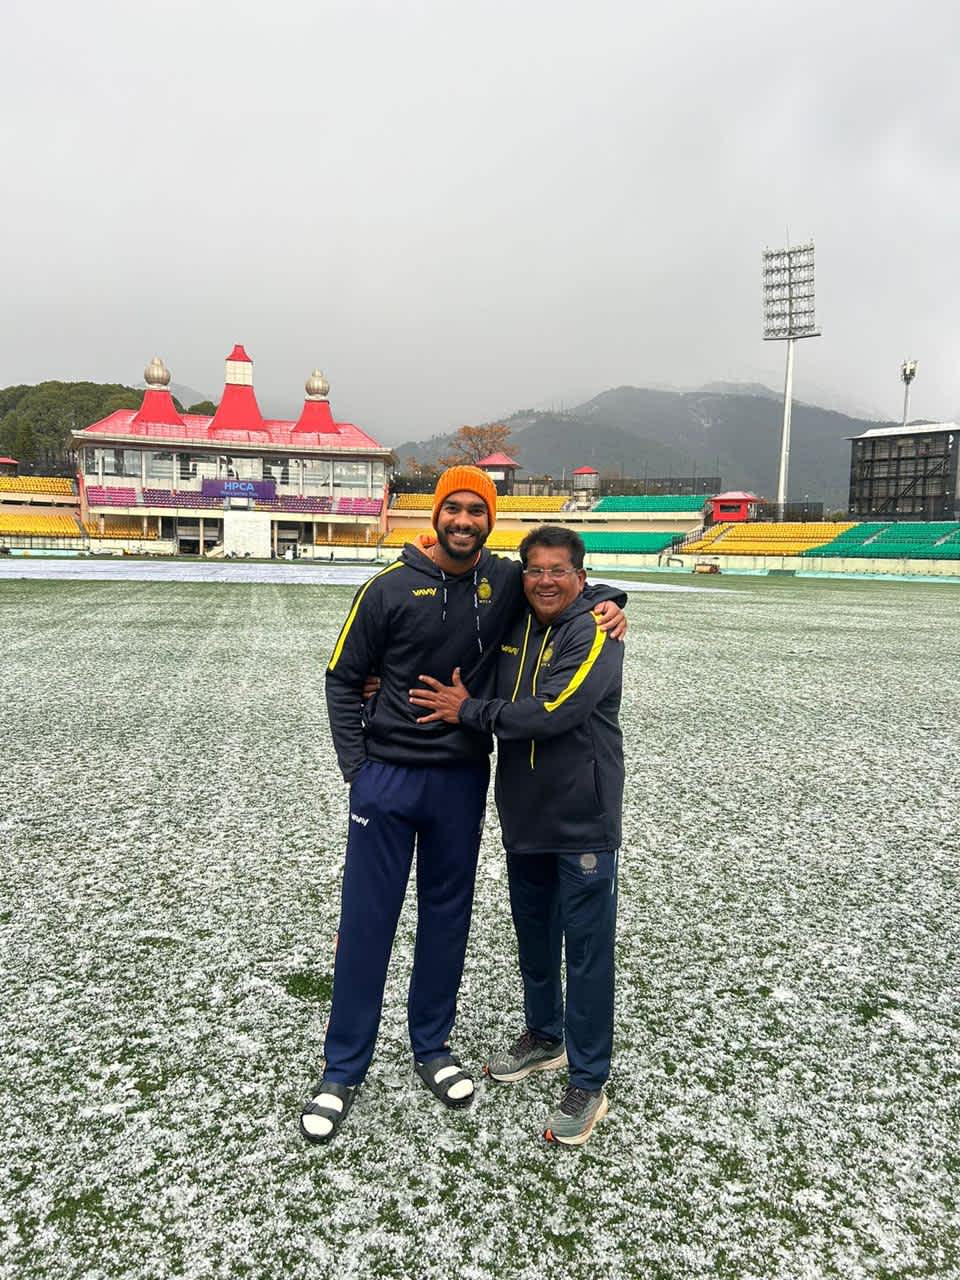 Venkatesh Iyer and Madhya Pradesh coach Chandrakant Pandit at the snow-clad HPCA Stadium